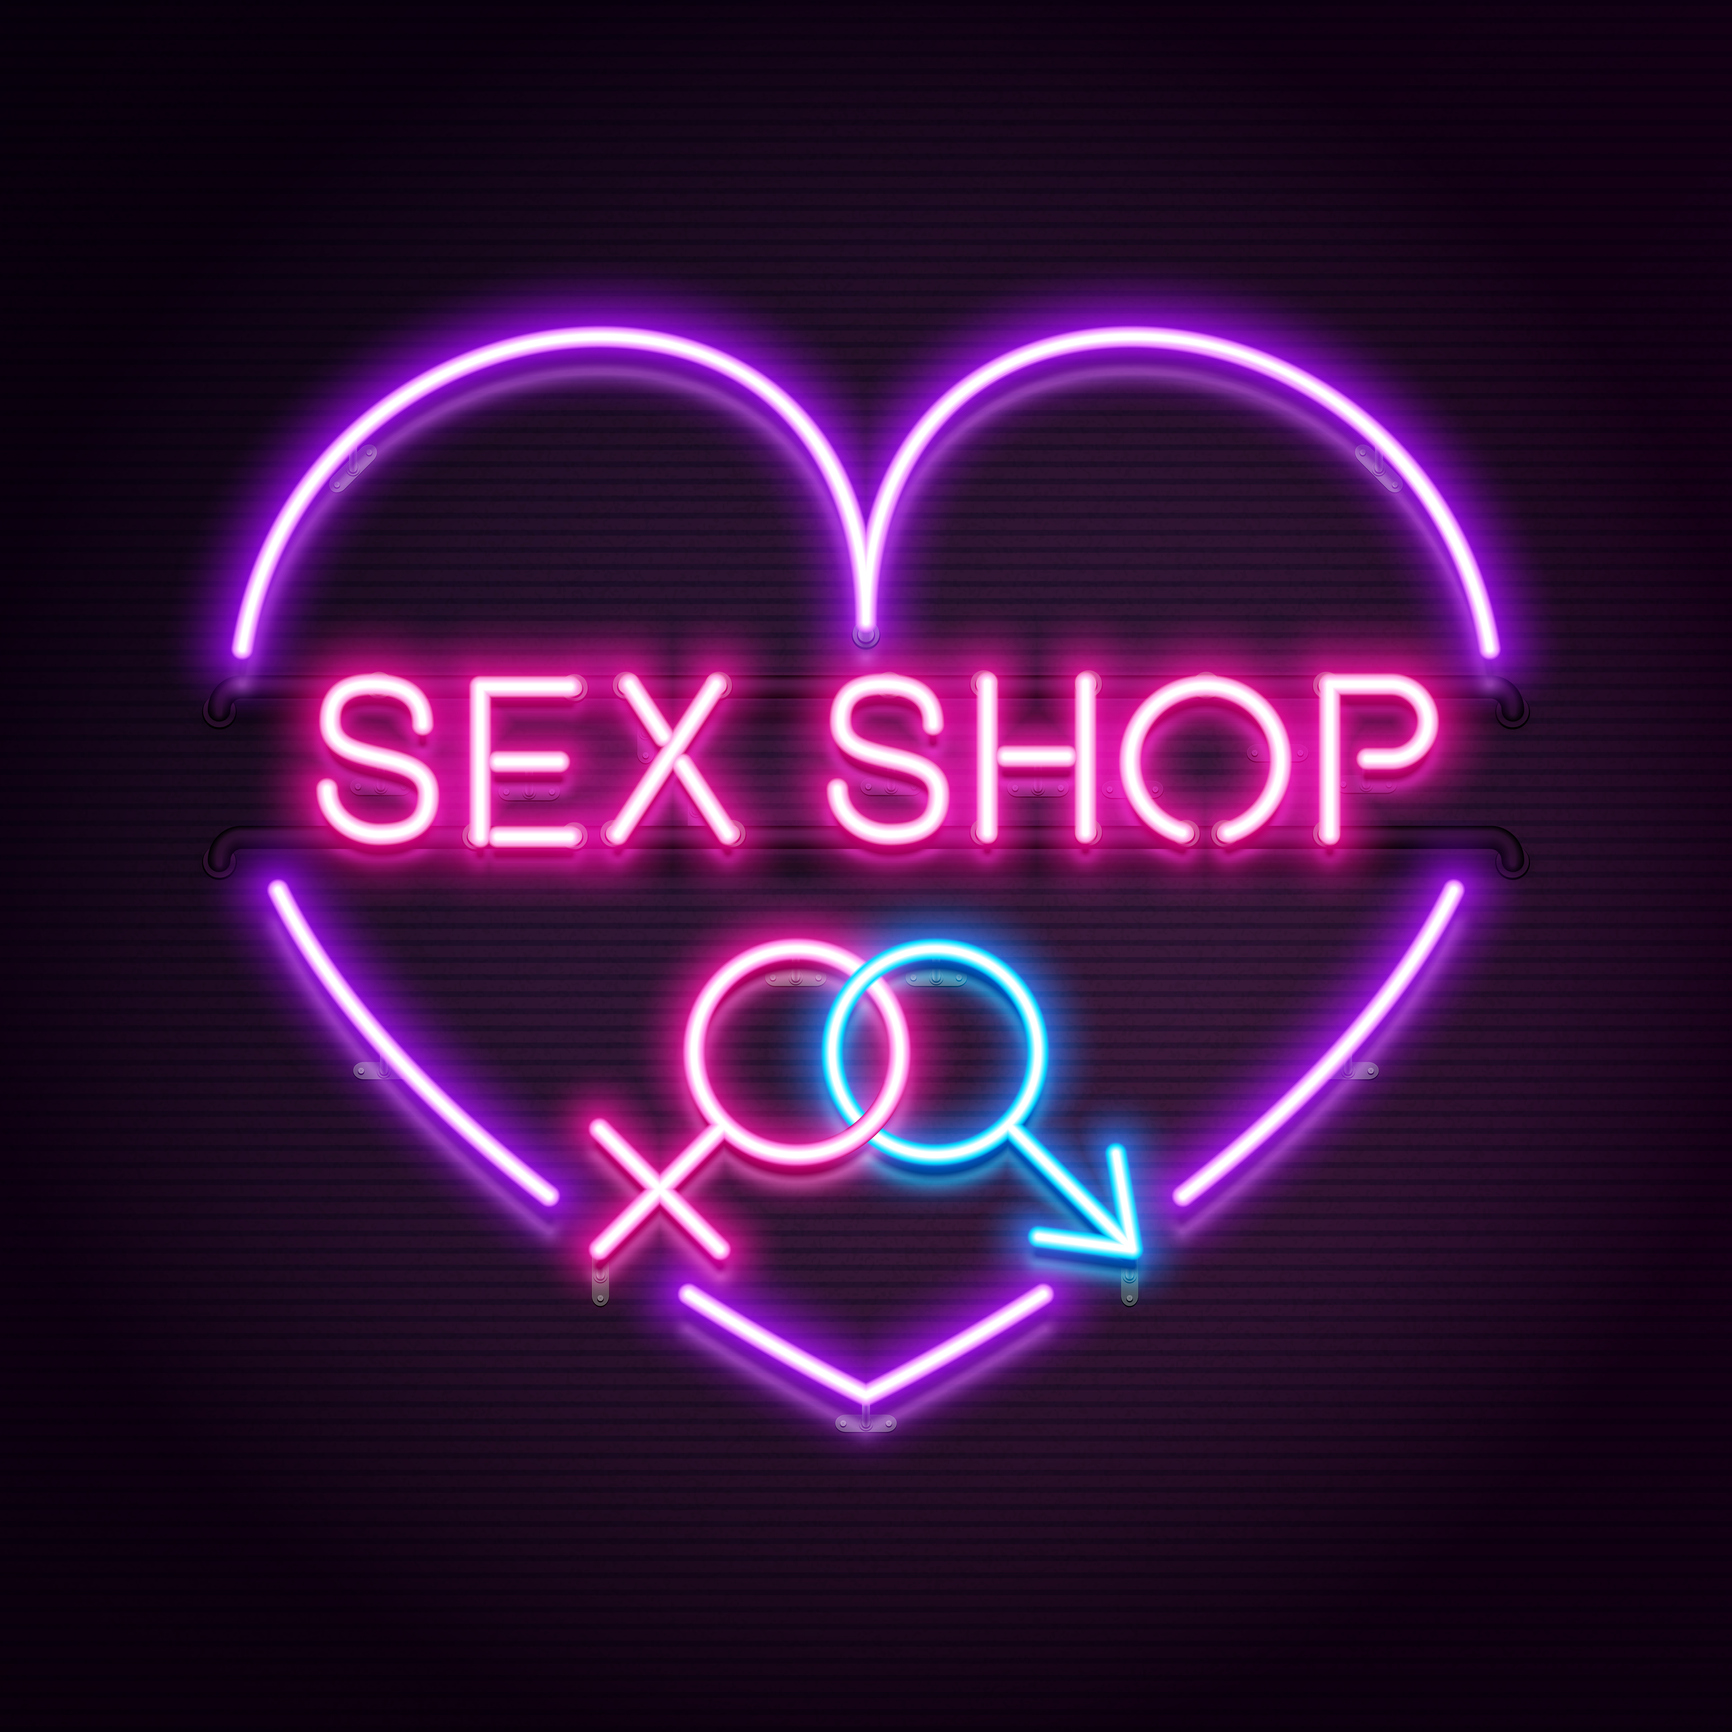 Γιατί δεν είναι ντροπή για μια γυναίκα να μπει σε ένα sex shop και να “το σηκώσει”!